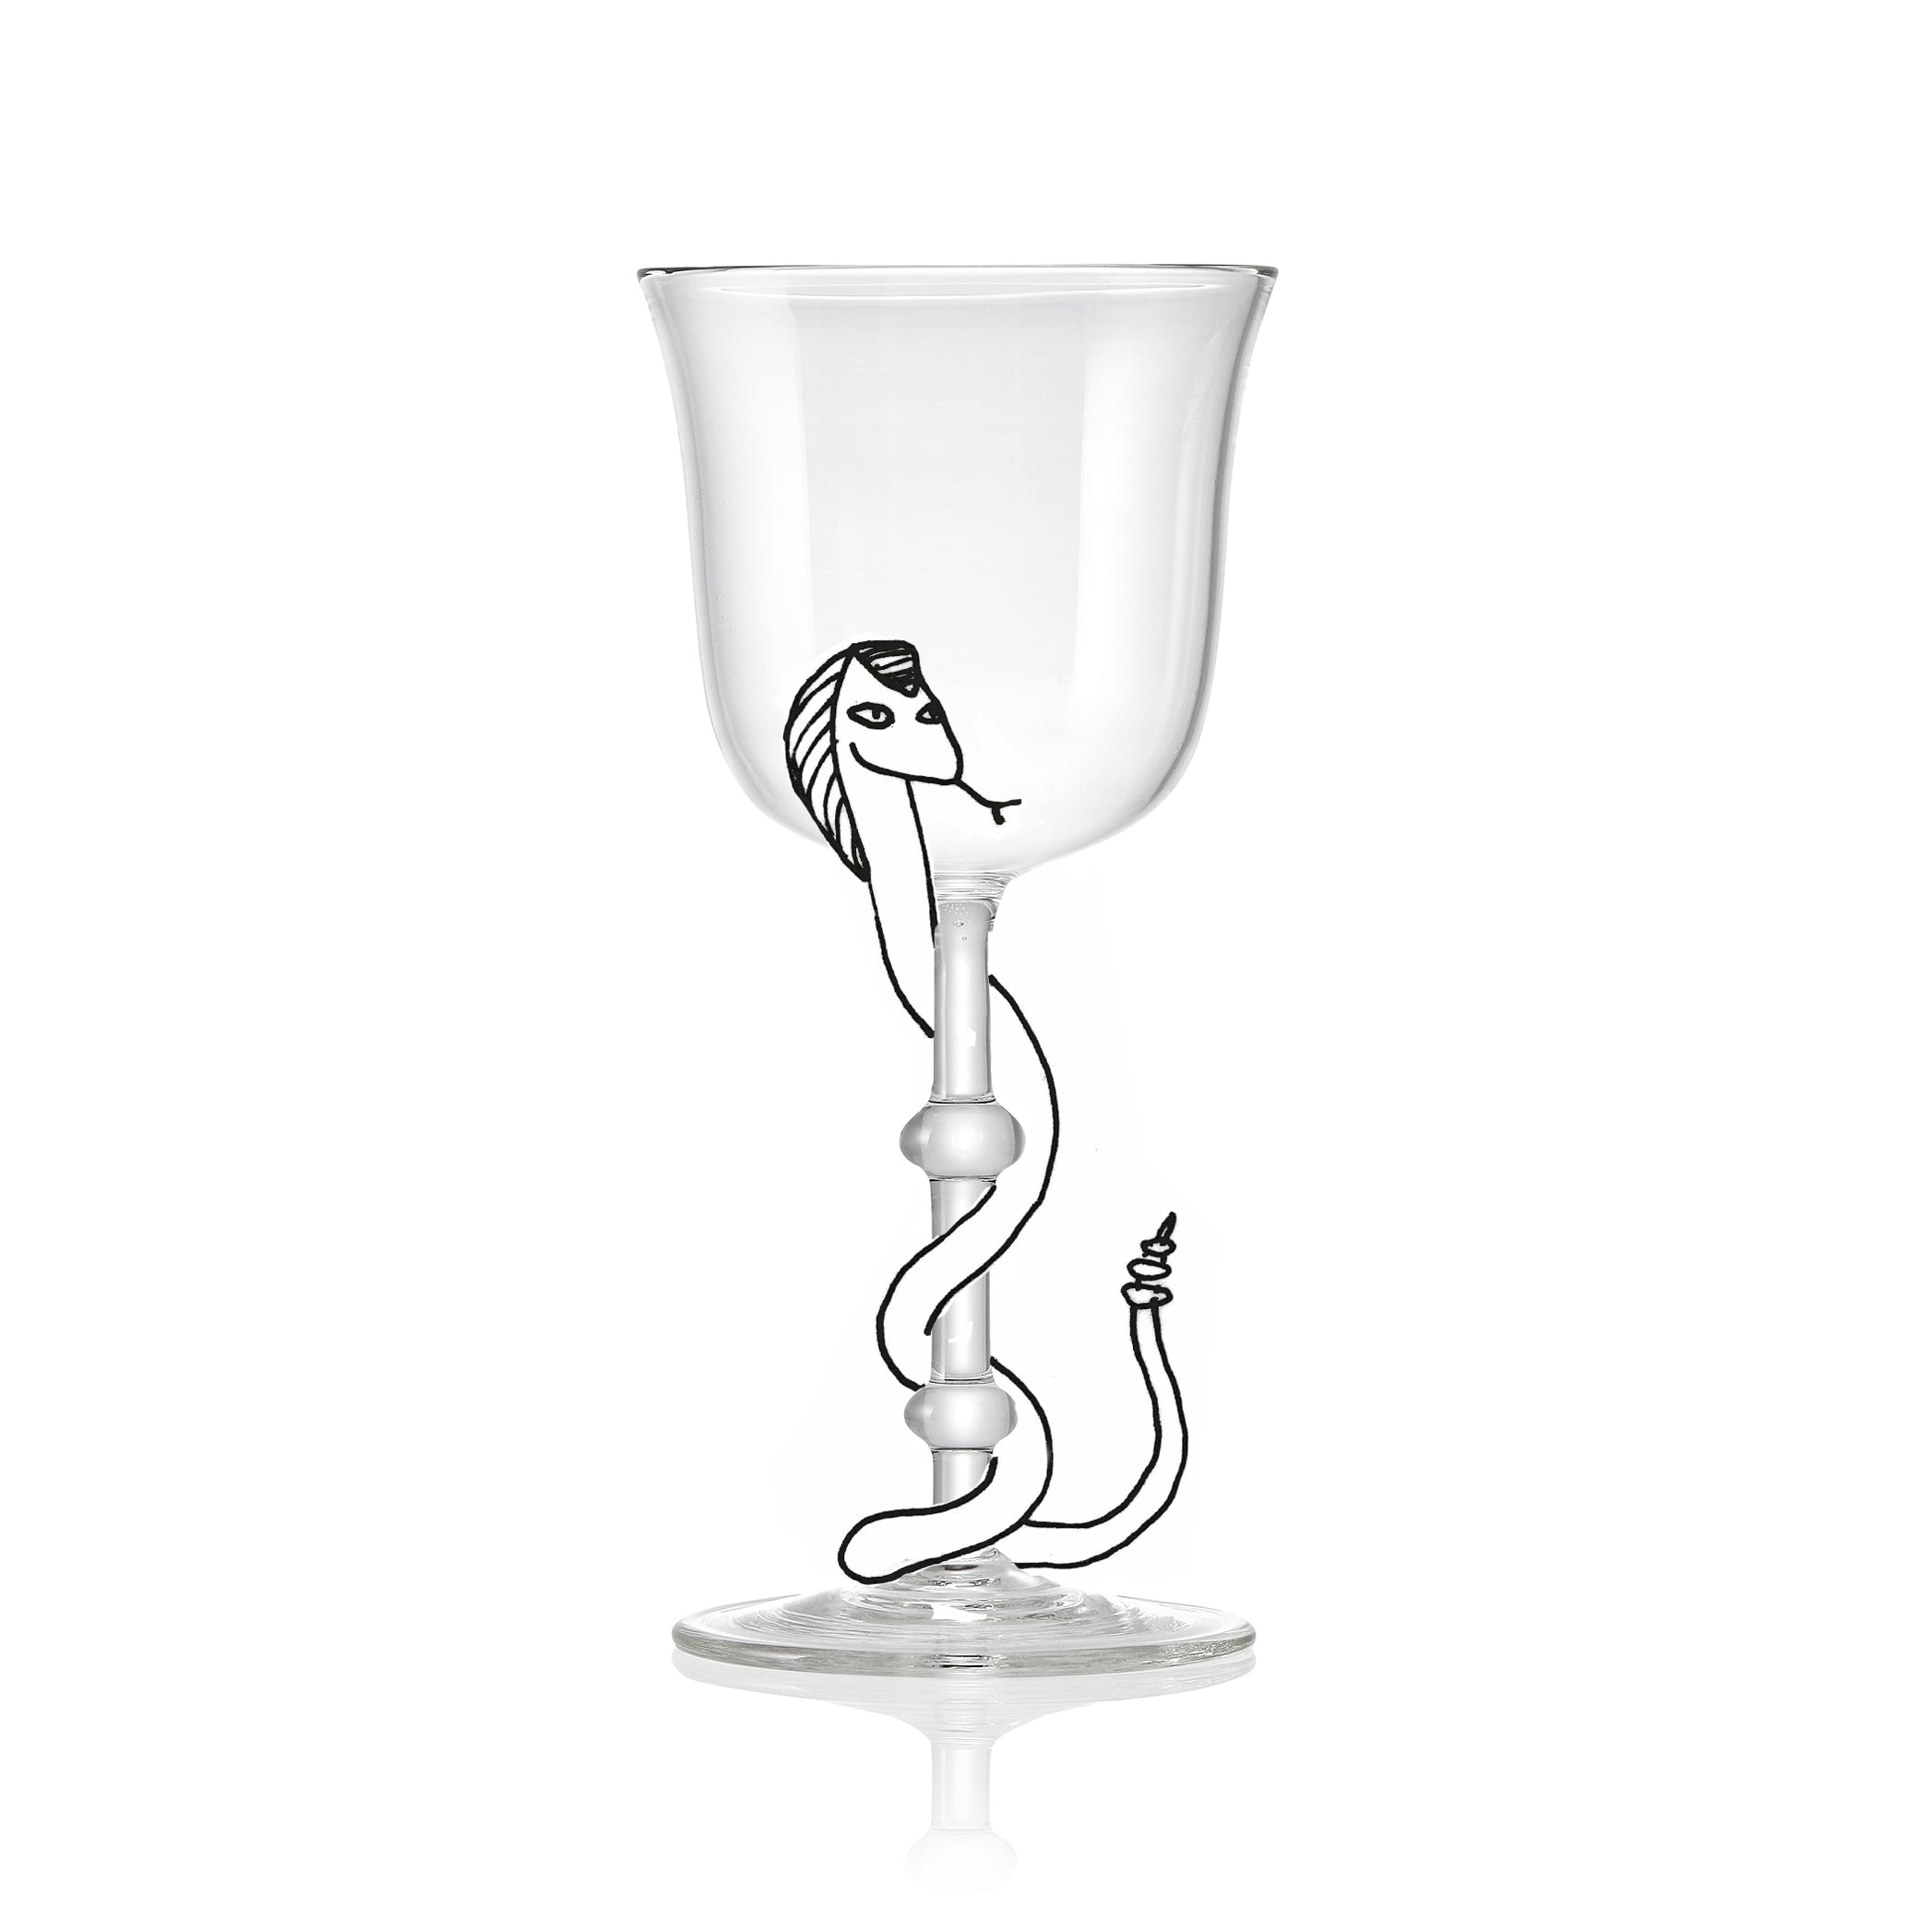 Handblown White Wine Glass, 18.5cm